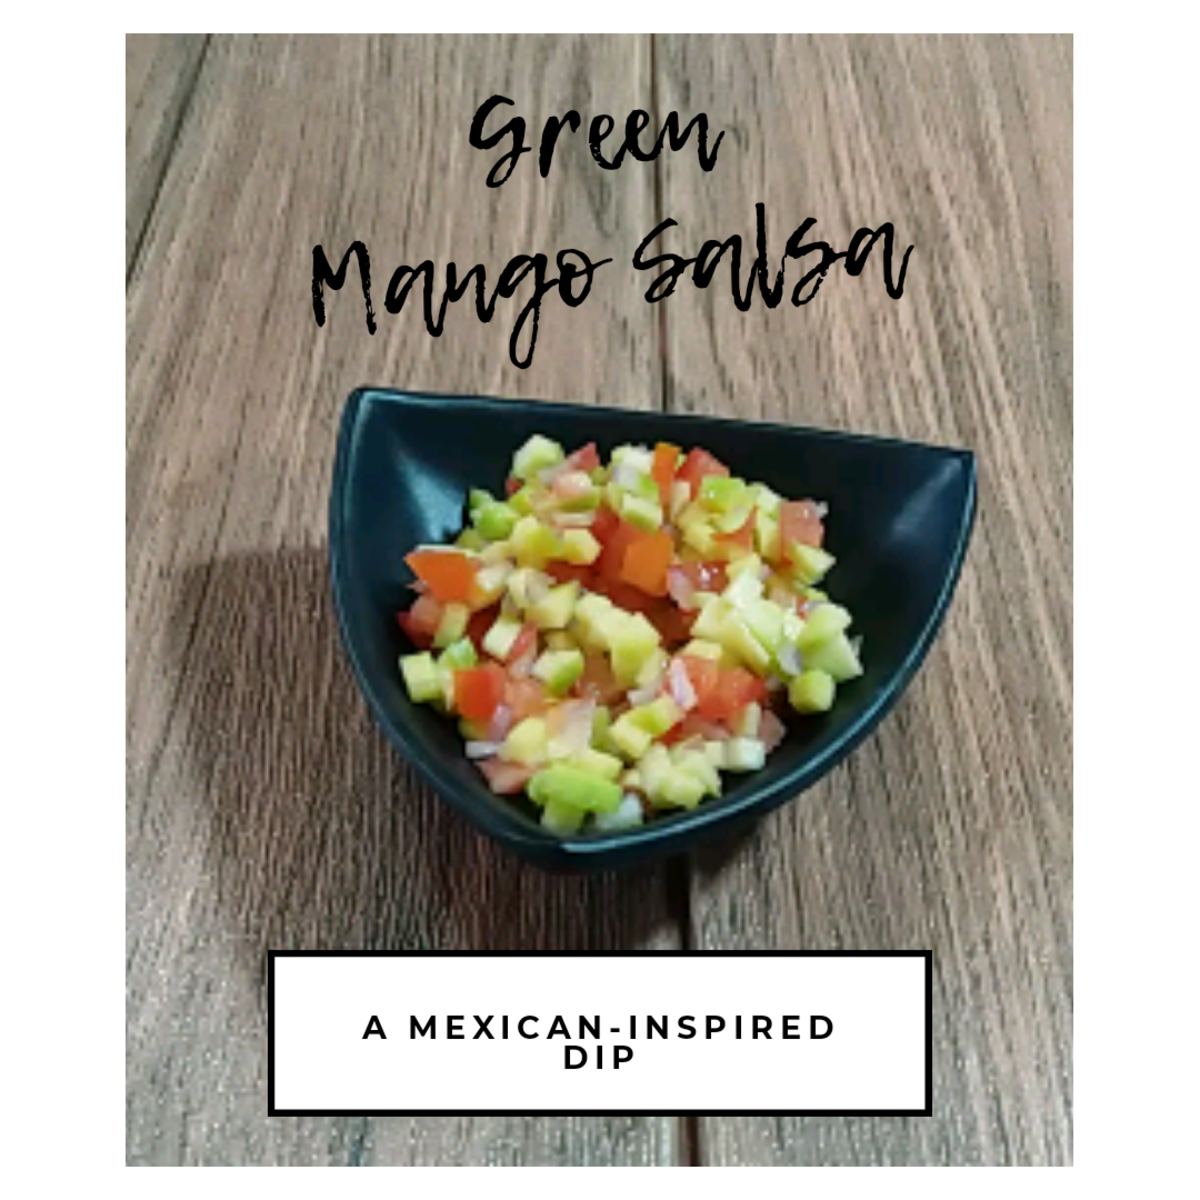 Learn how to make green mango salsa